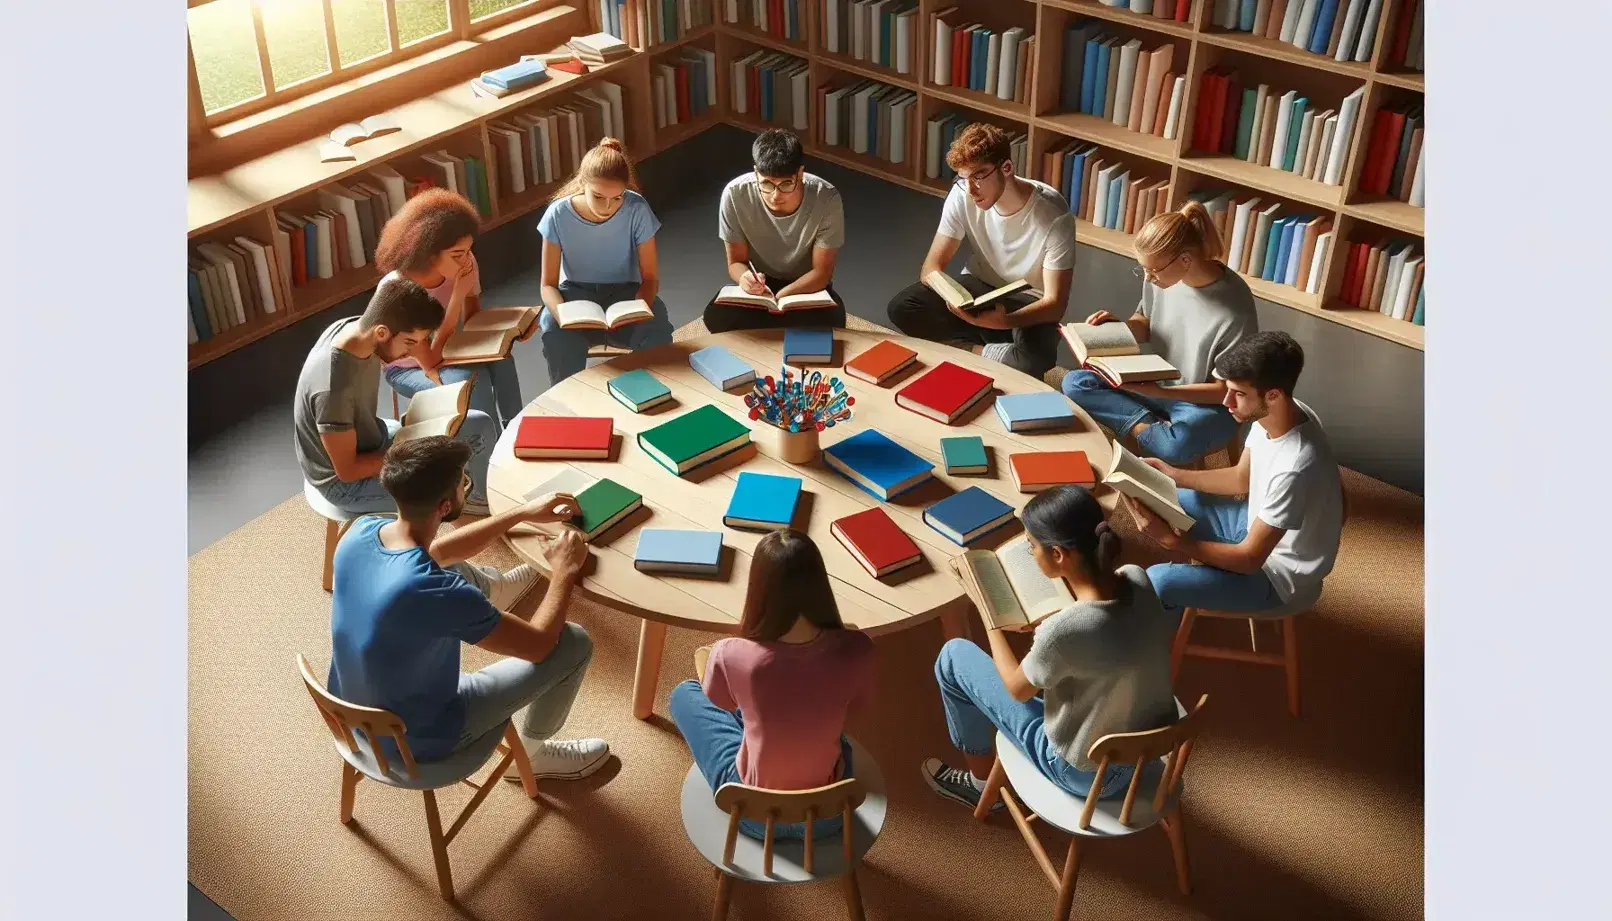 Estudiantes diversos concentrados estudiando en biblioteca, con libros y cuadernos sobre mesa redonda y estantes llenos al fondo.